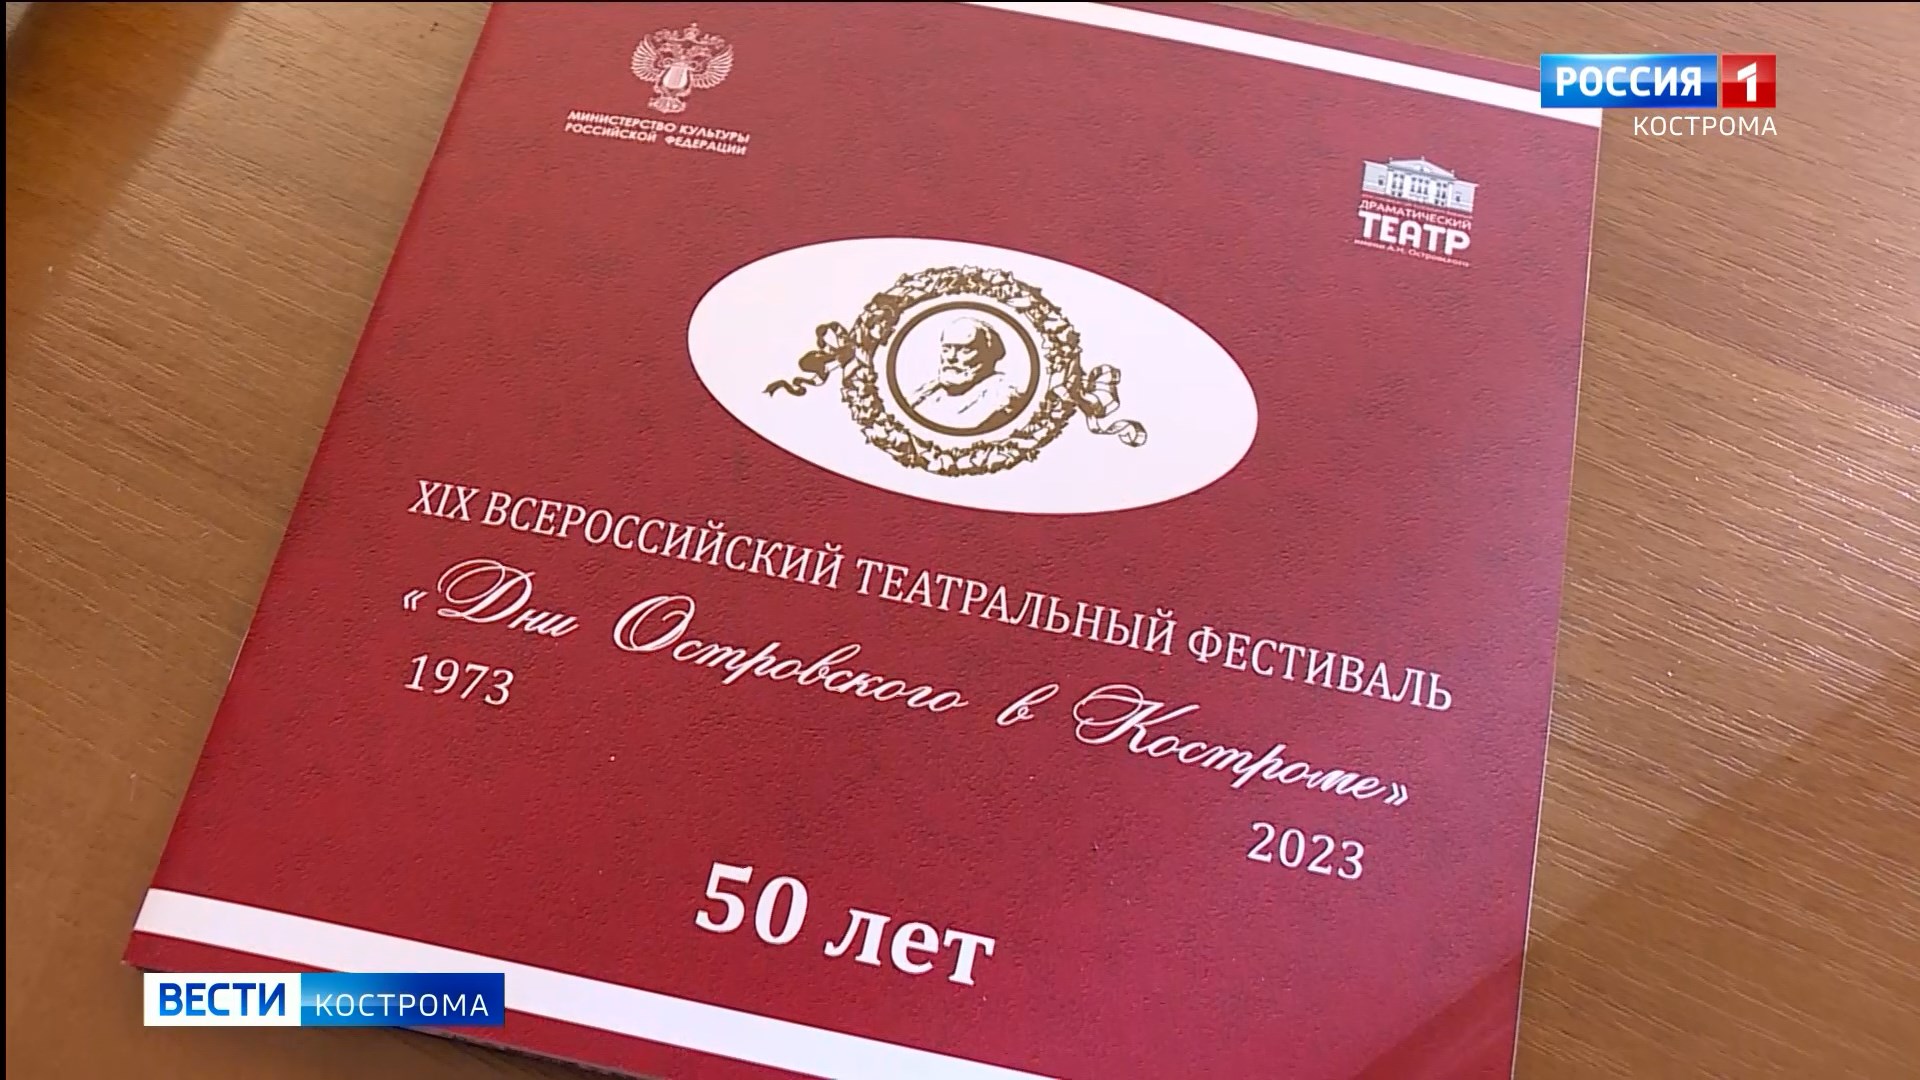 В областной столице подвели итоги театрального фестиваля «Дни Островского в Костроме»